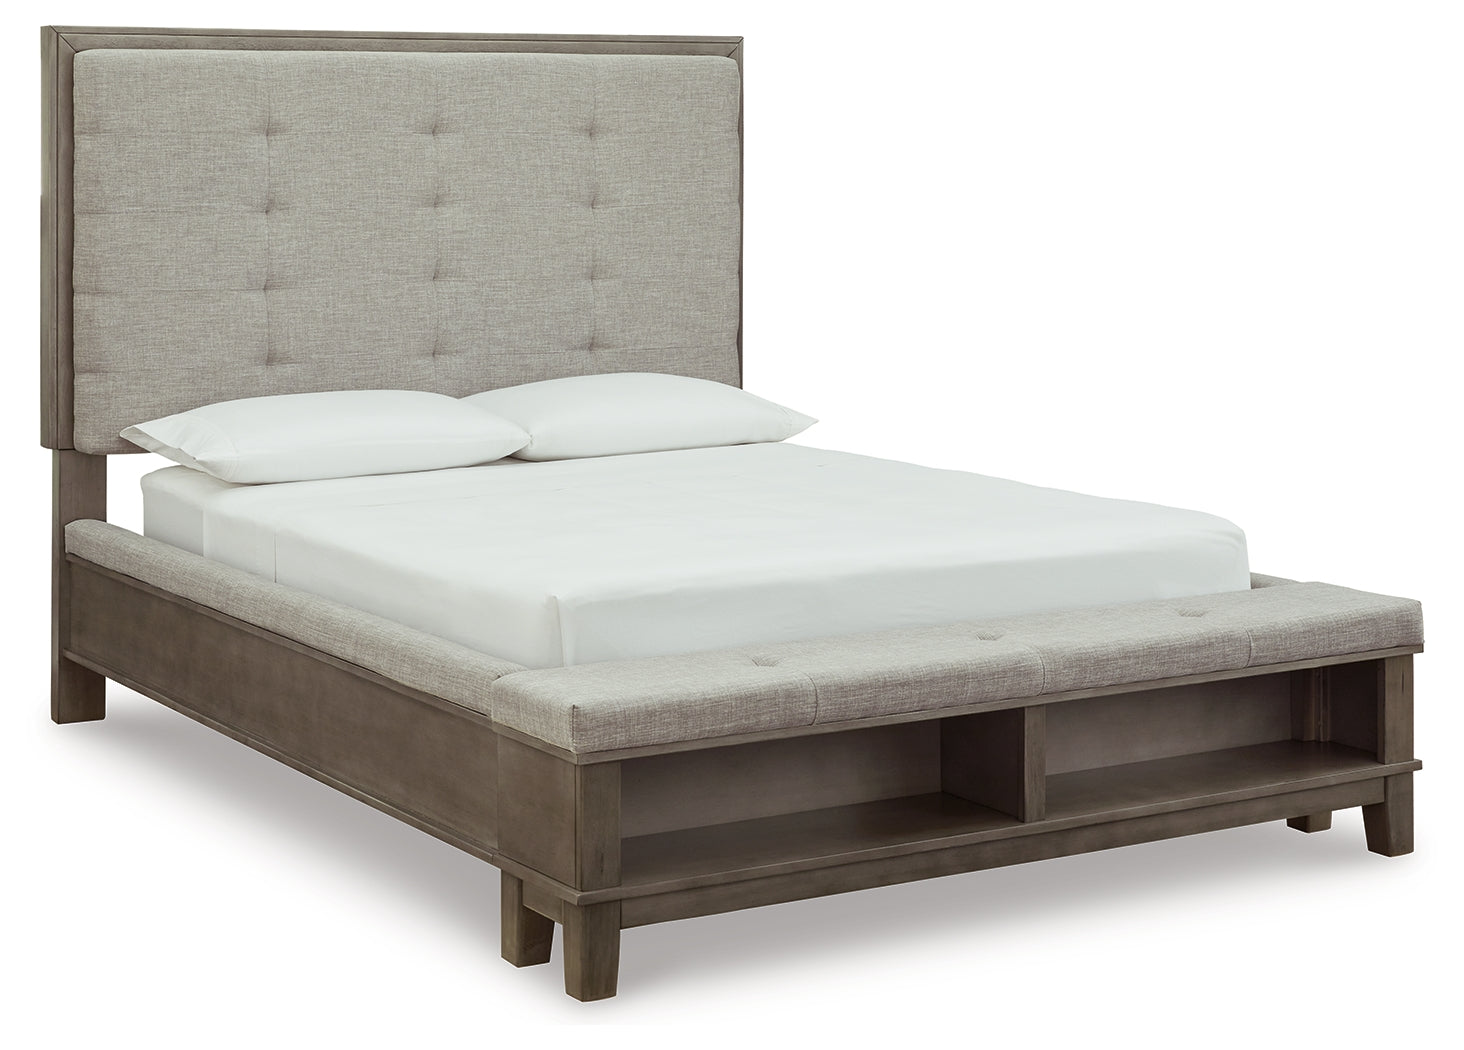 Hallanden Gray Queen Upholstered Storage Bed